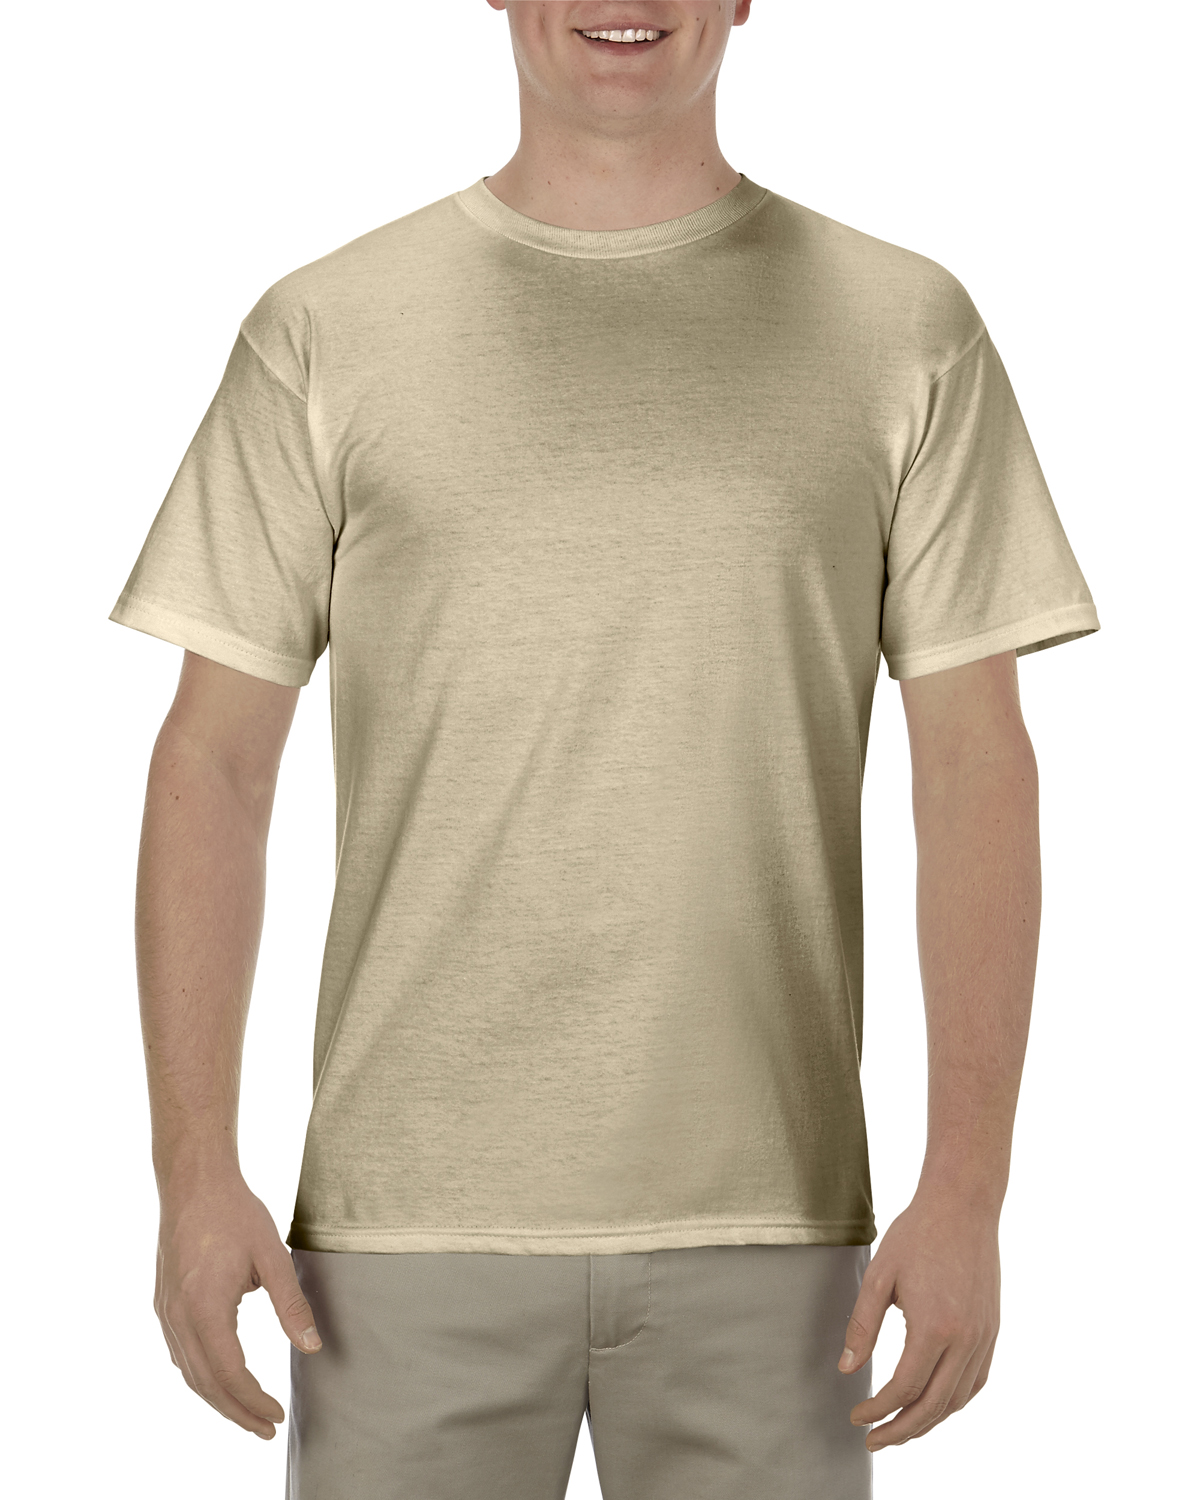 | Soft T-Shirt Adult ShirtSpace 5.5 | 100% Spun Cotton oz., AL1701 Alstyle